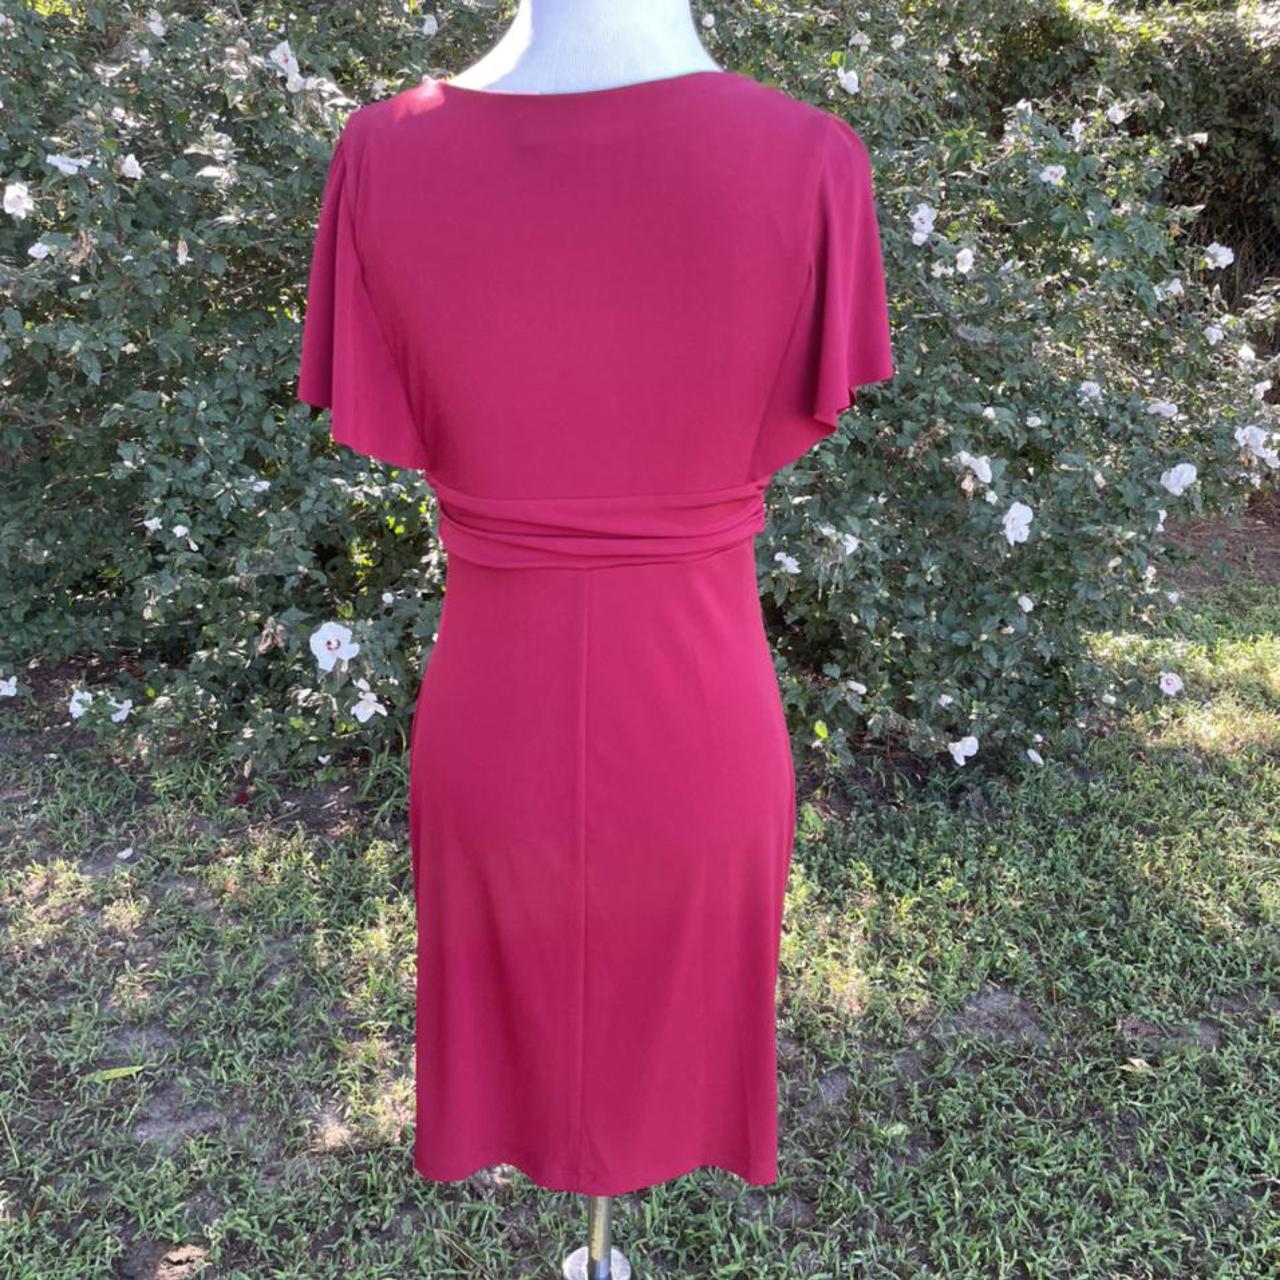 Enfocus Studio Women's Red Dress (2)